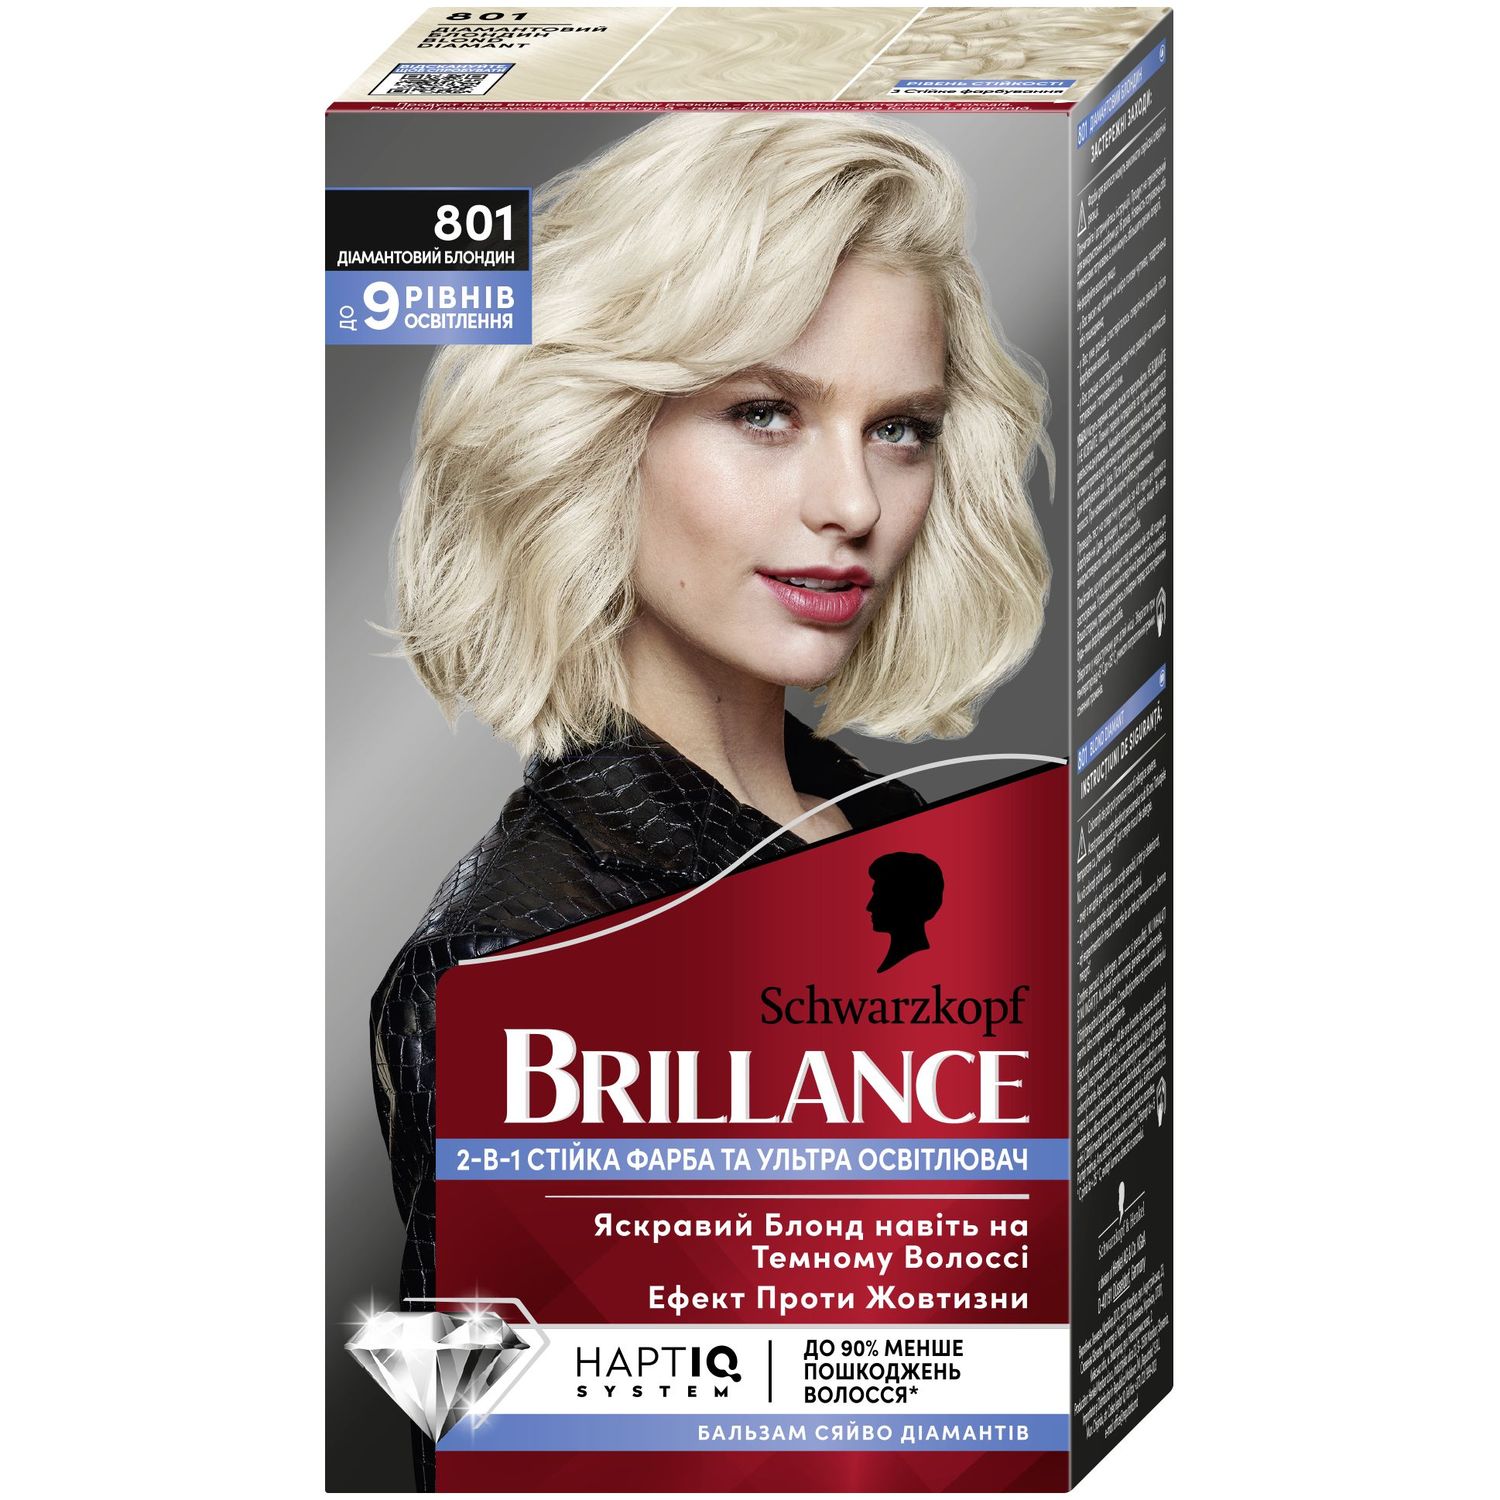 Стійка крем-фарба для волосся Schwarzkopf Brillance 801 Діамантовий блондин, 142.5 мл - фото 1